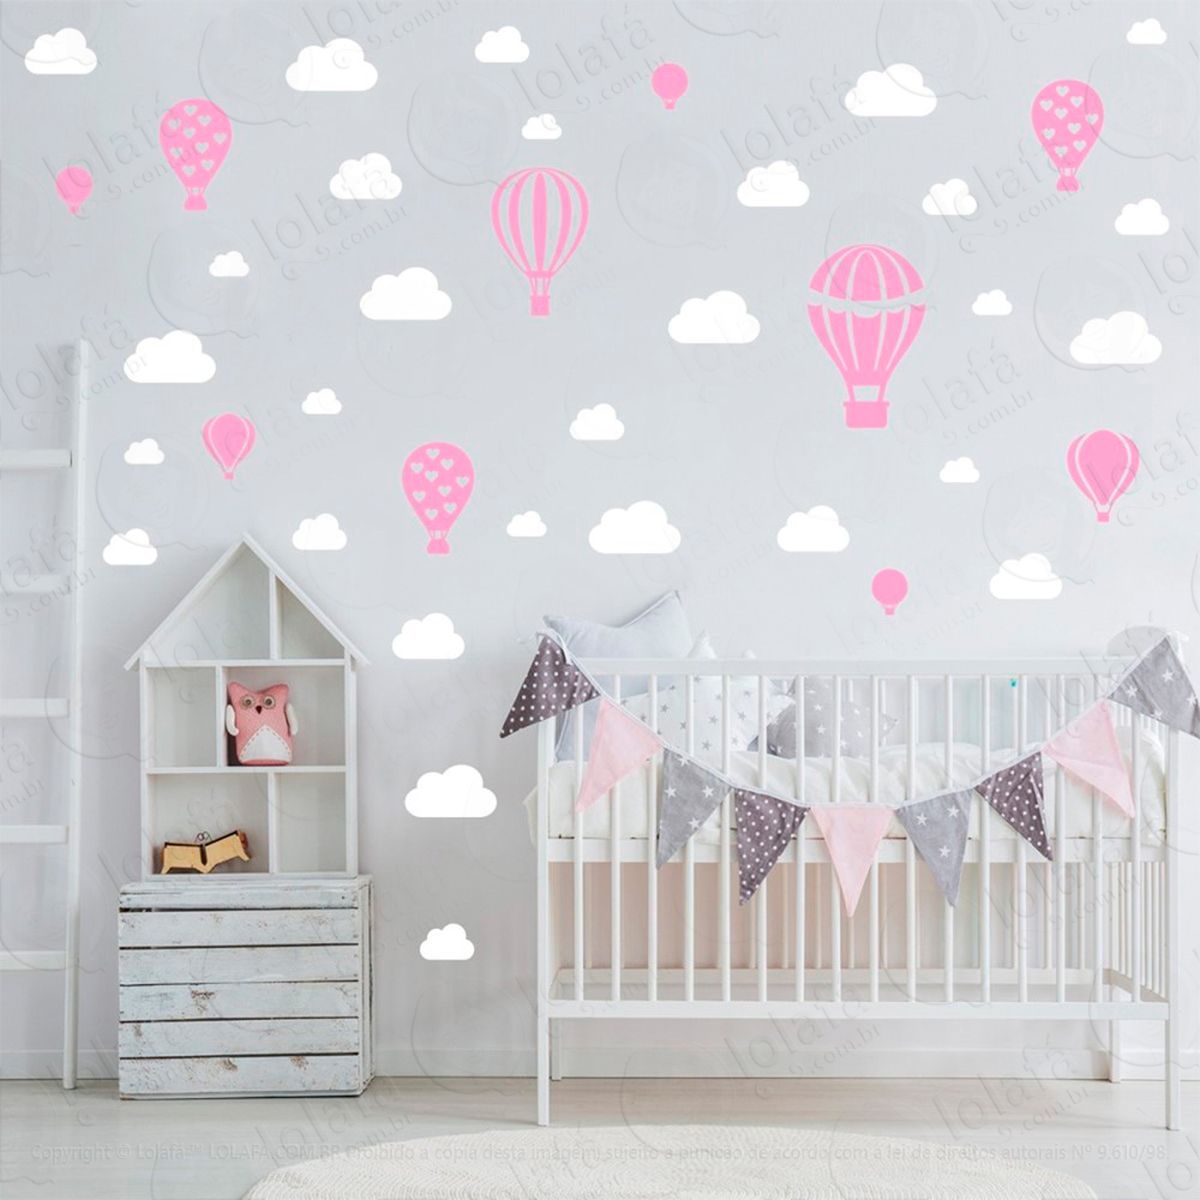 adesivos balões e nuvens 42 peças adesivos para quarto de bebê infantil - mod:948